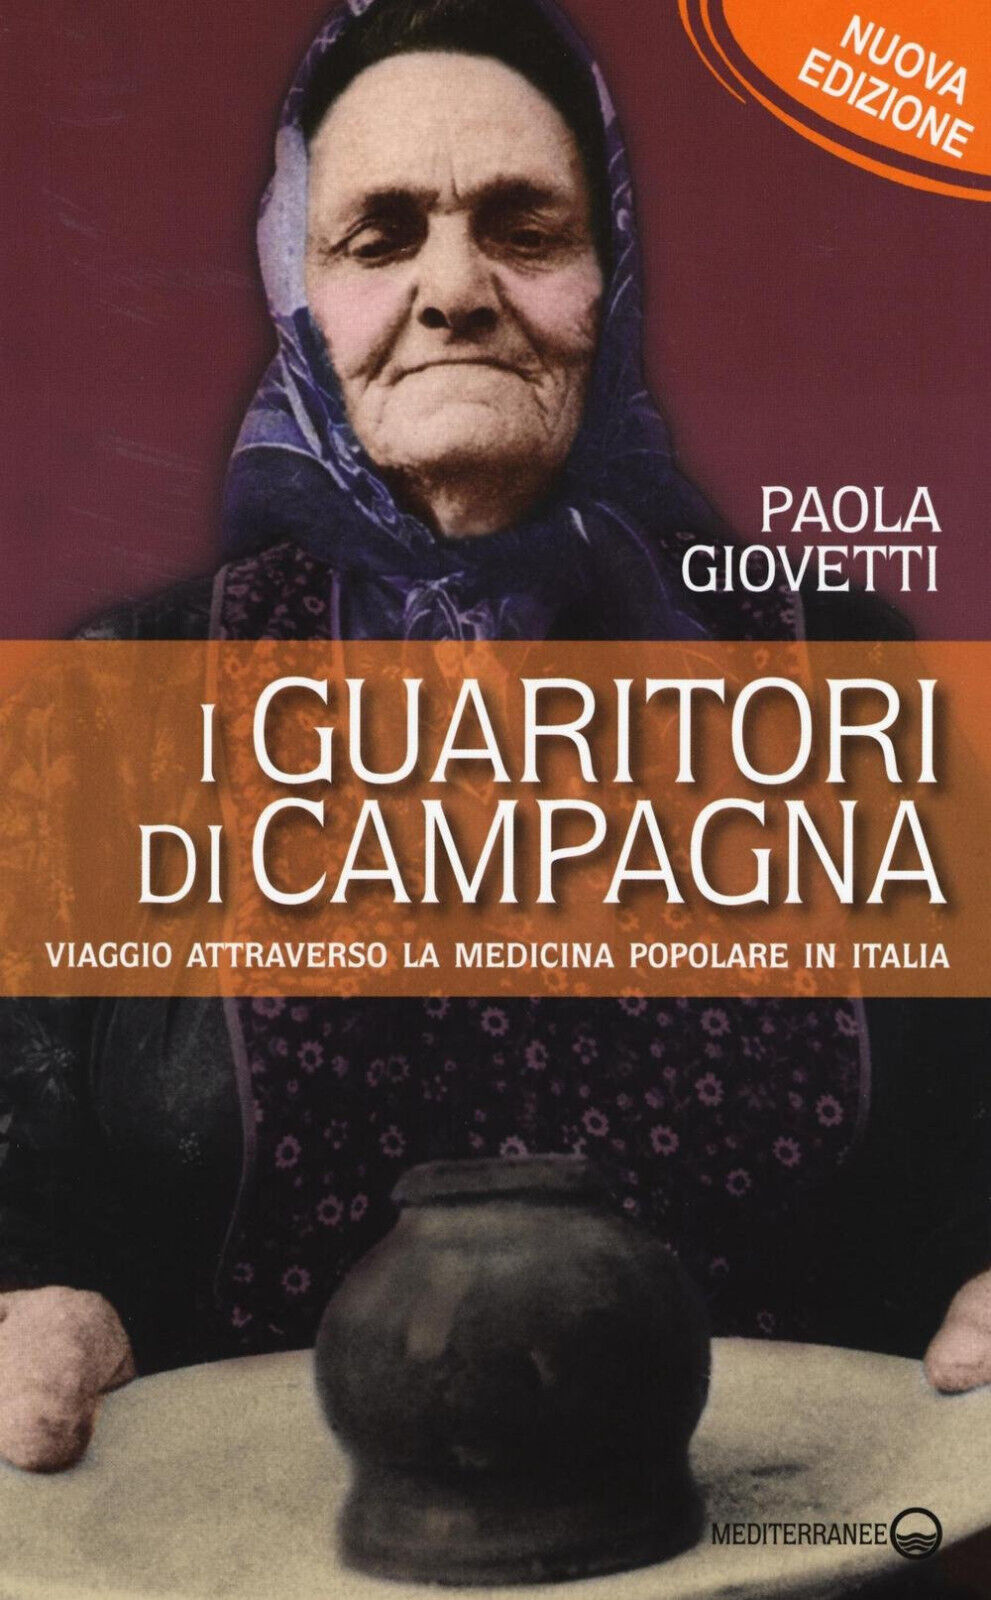 I guaritori di campagna - Paola Giovetti - Edizioni Mediterranee, 2016